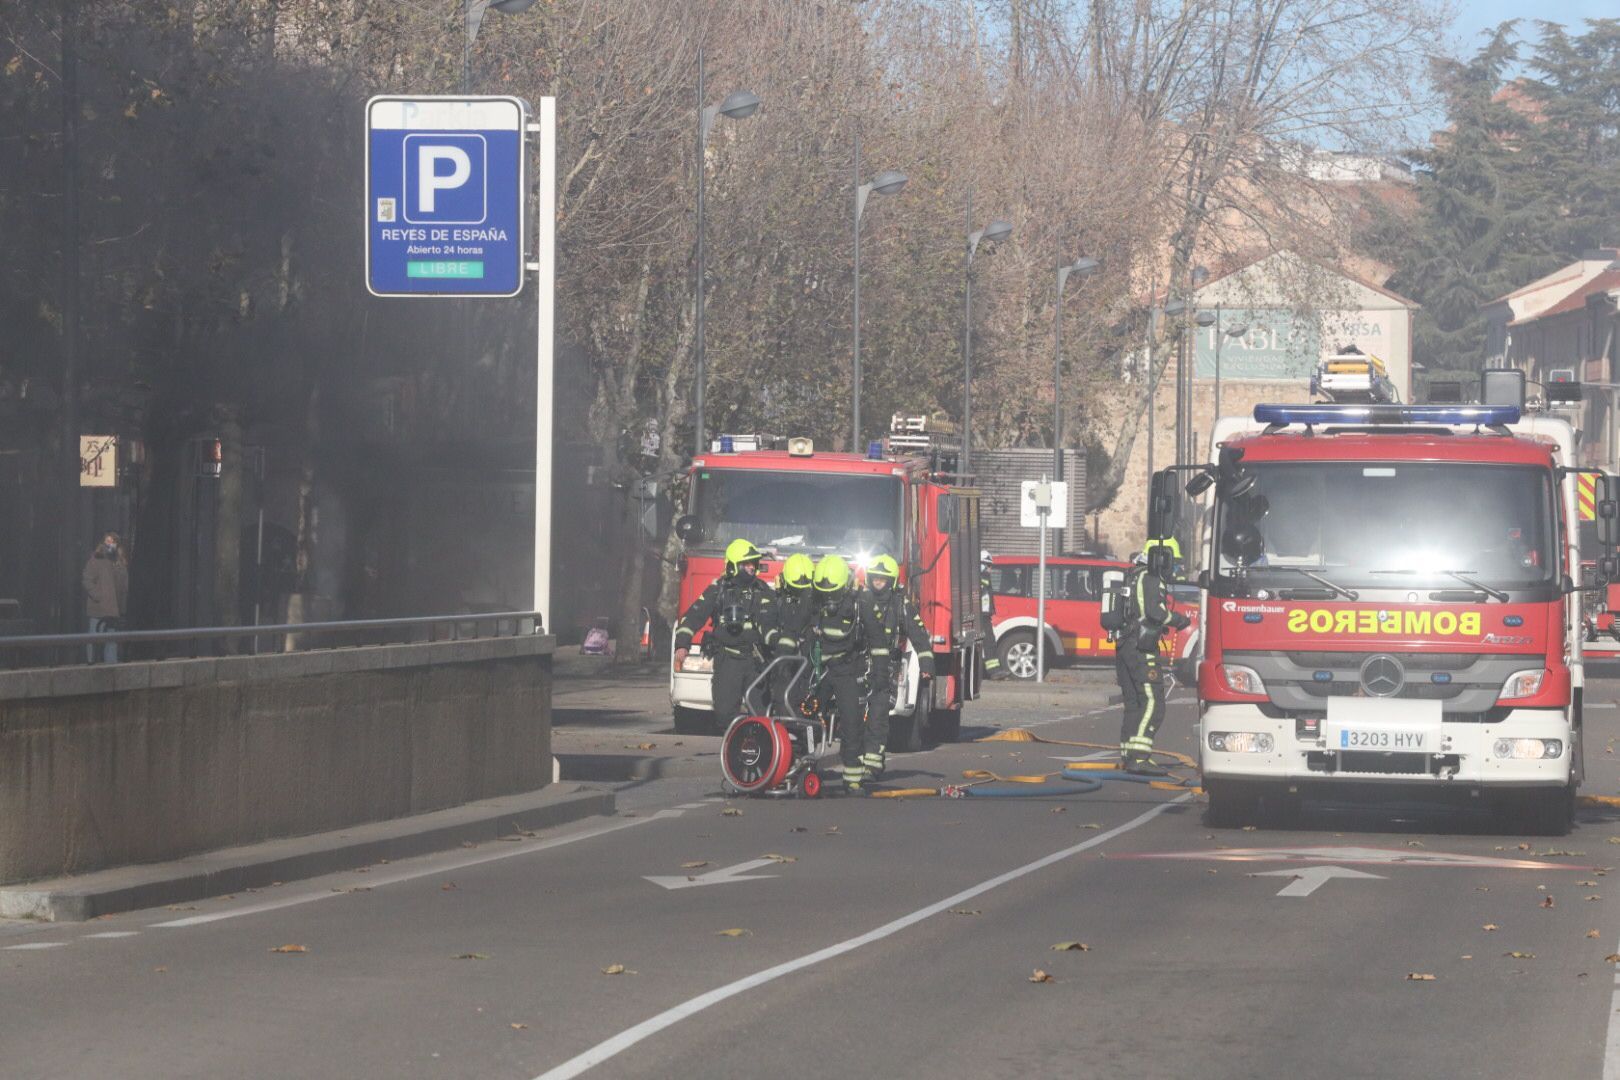 Un coche se incendia en el parking de Reyes de España. SALAMANCA24HORAS (16)